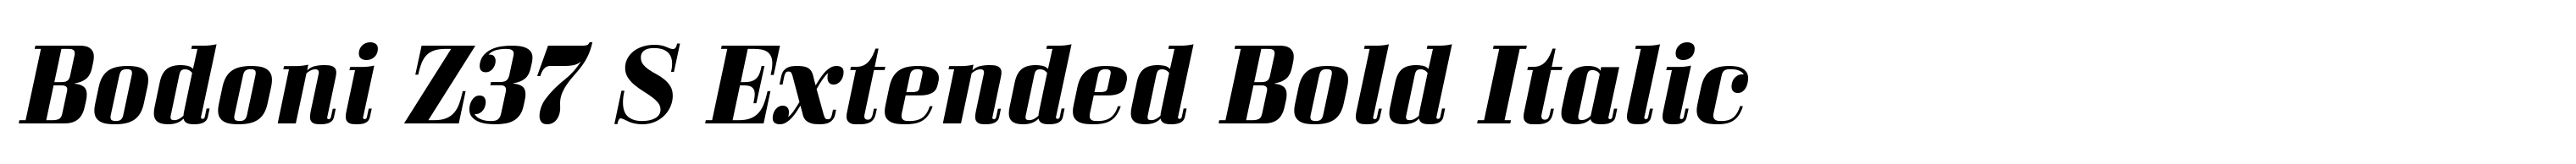 Bodoni Z37 S Extended Bold Italic